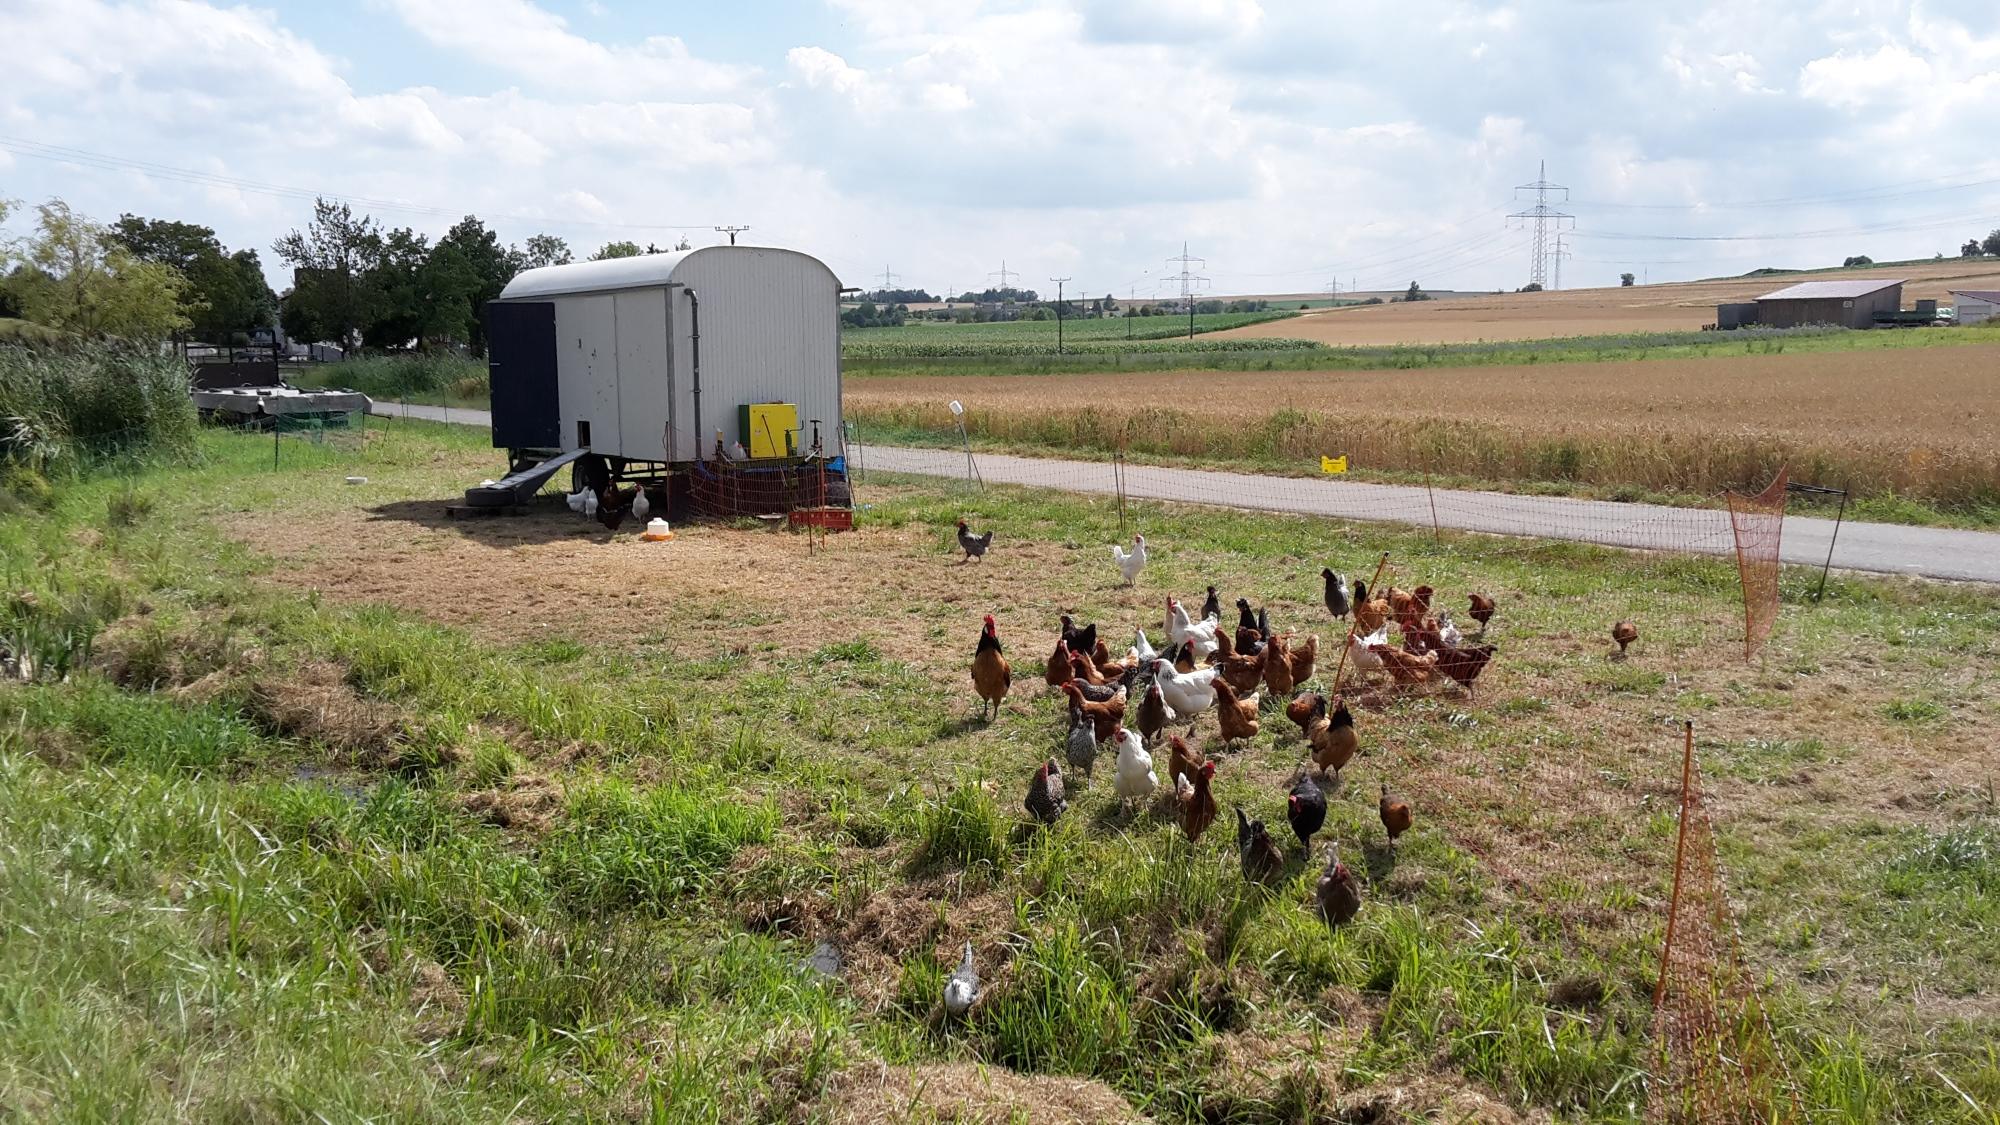 Mobile Hühnerställe für Hofläden: Hühnerhaltung leichtgemacht für Kleinerzeuger